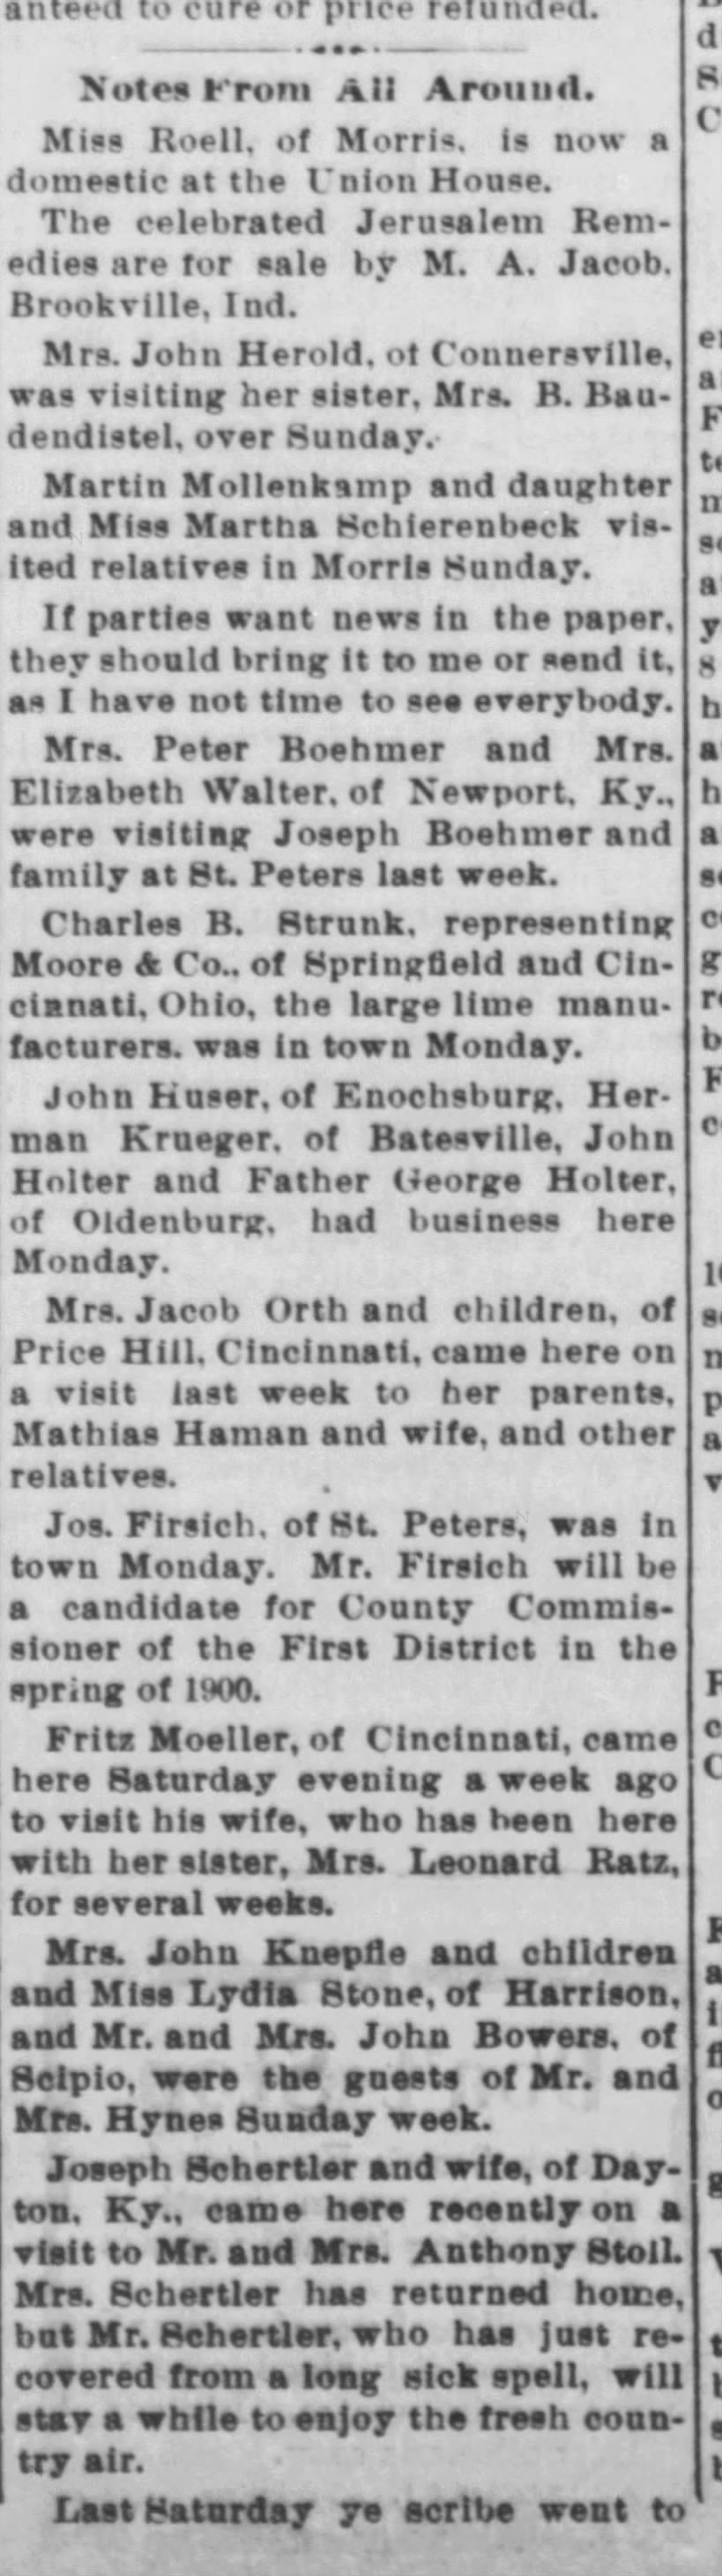 Joseph Schertler 6/8/1899 Travel news